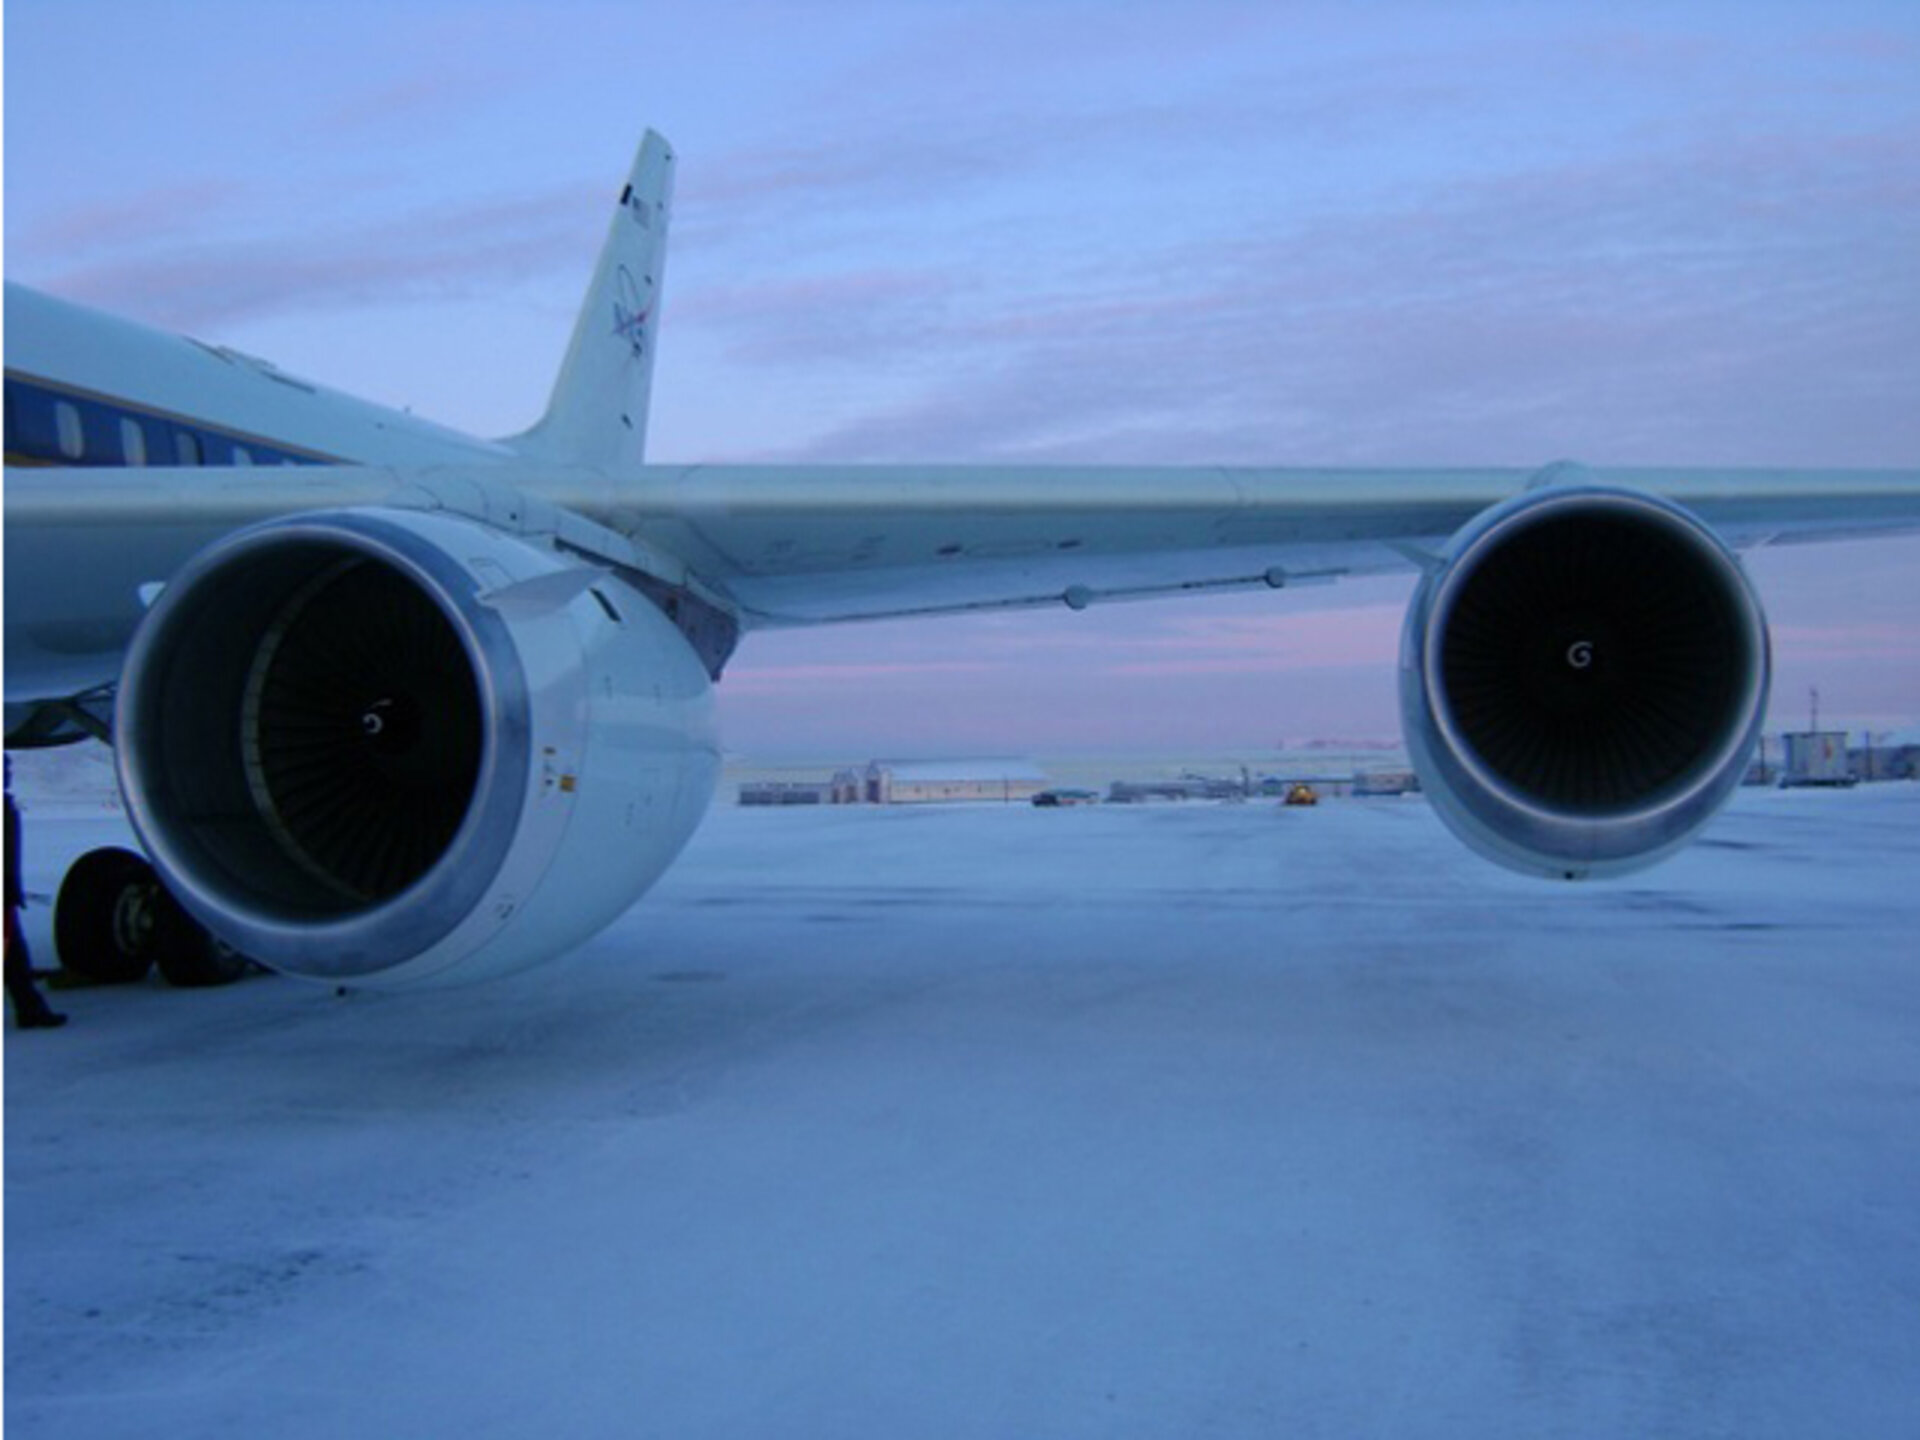 NASA's DC-8 at the Thule airbase